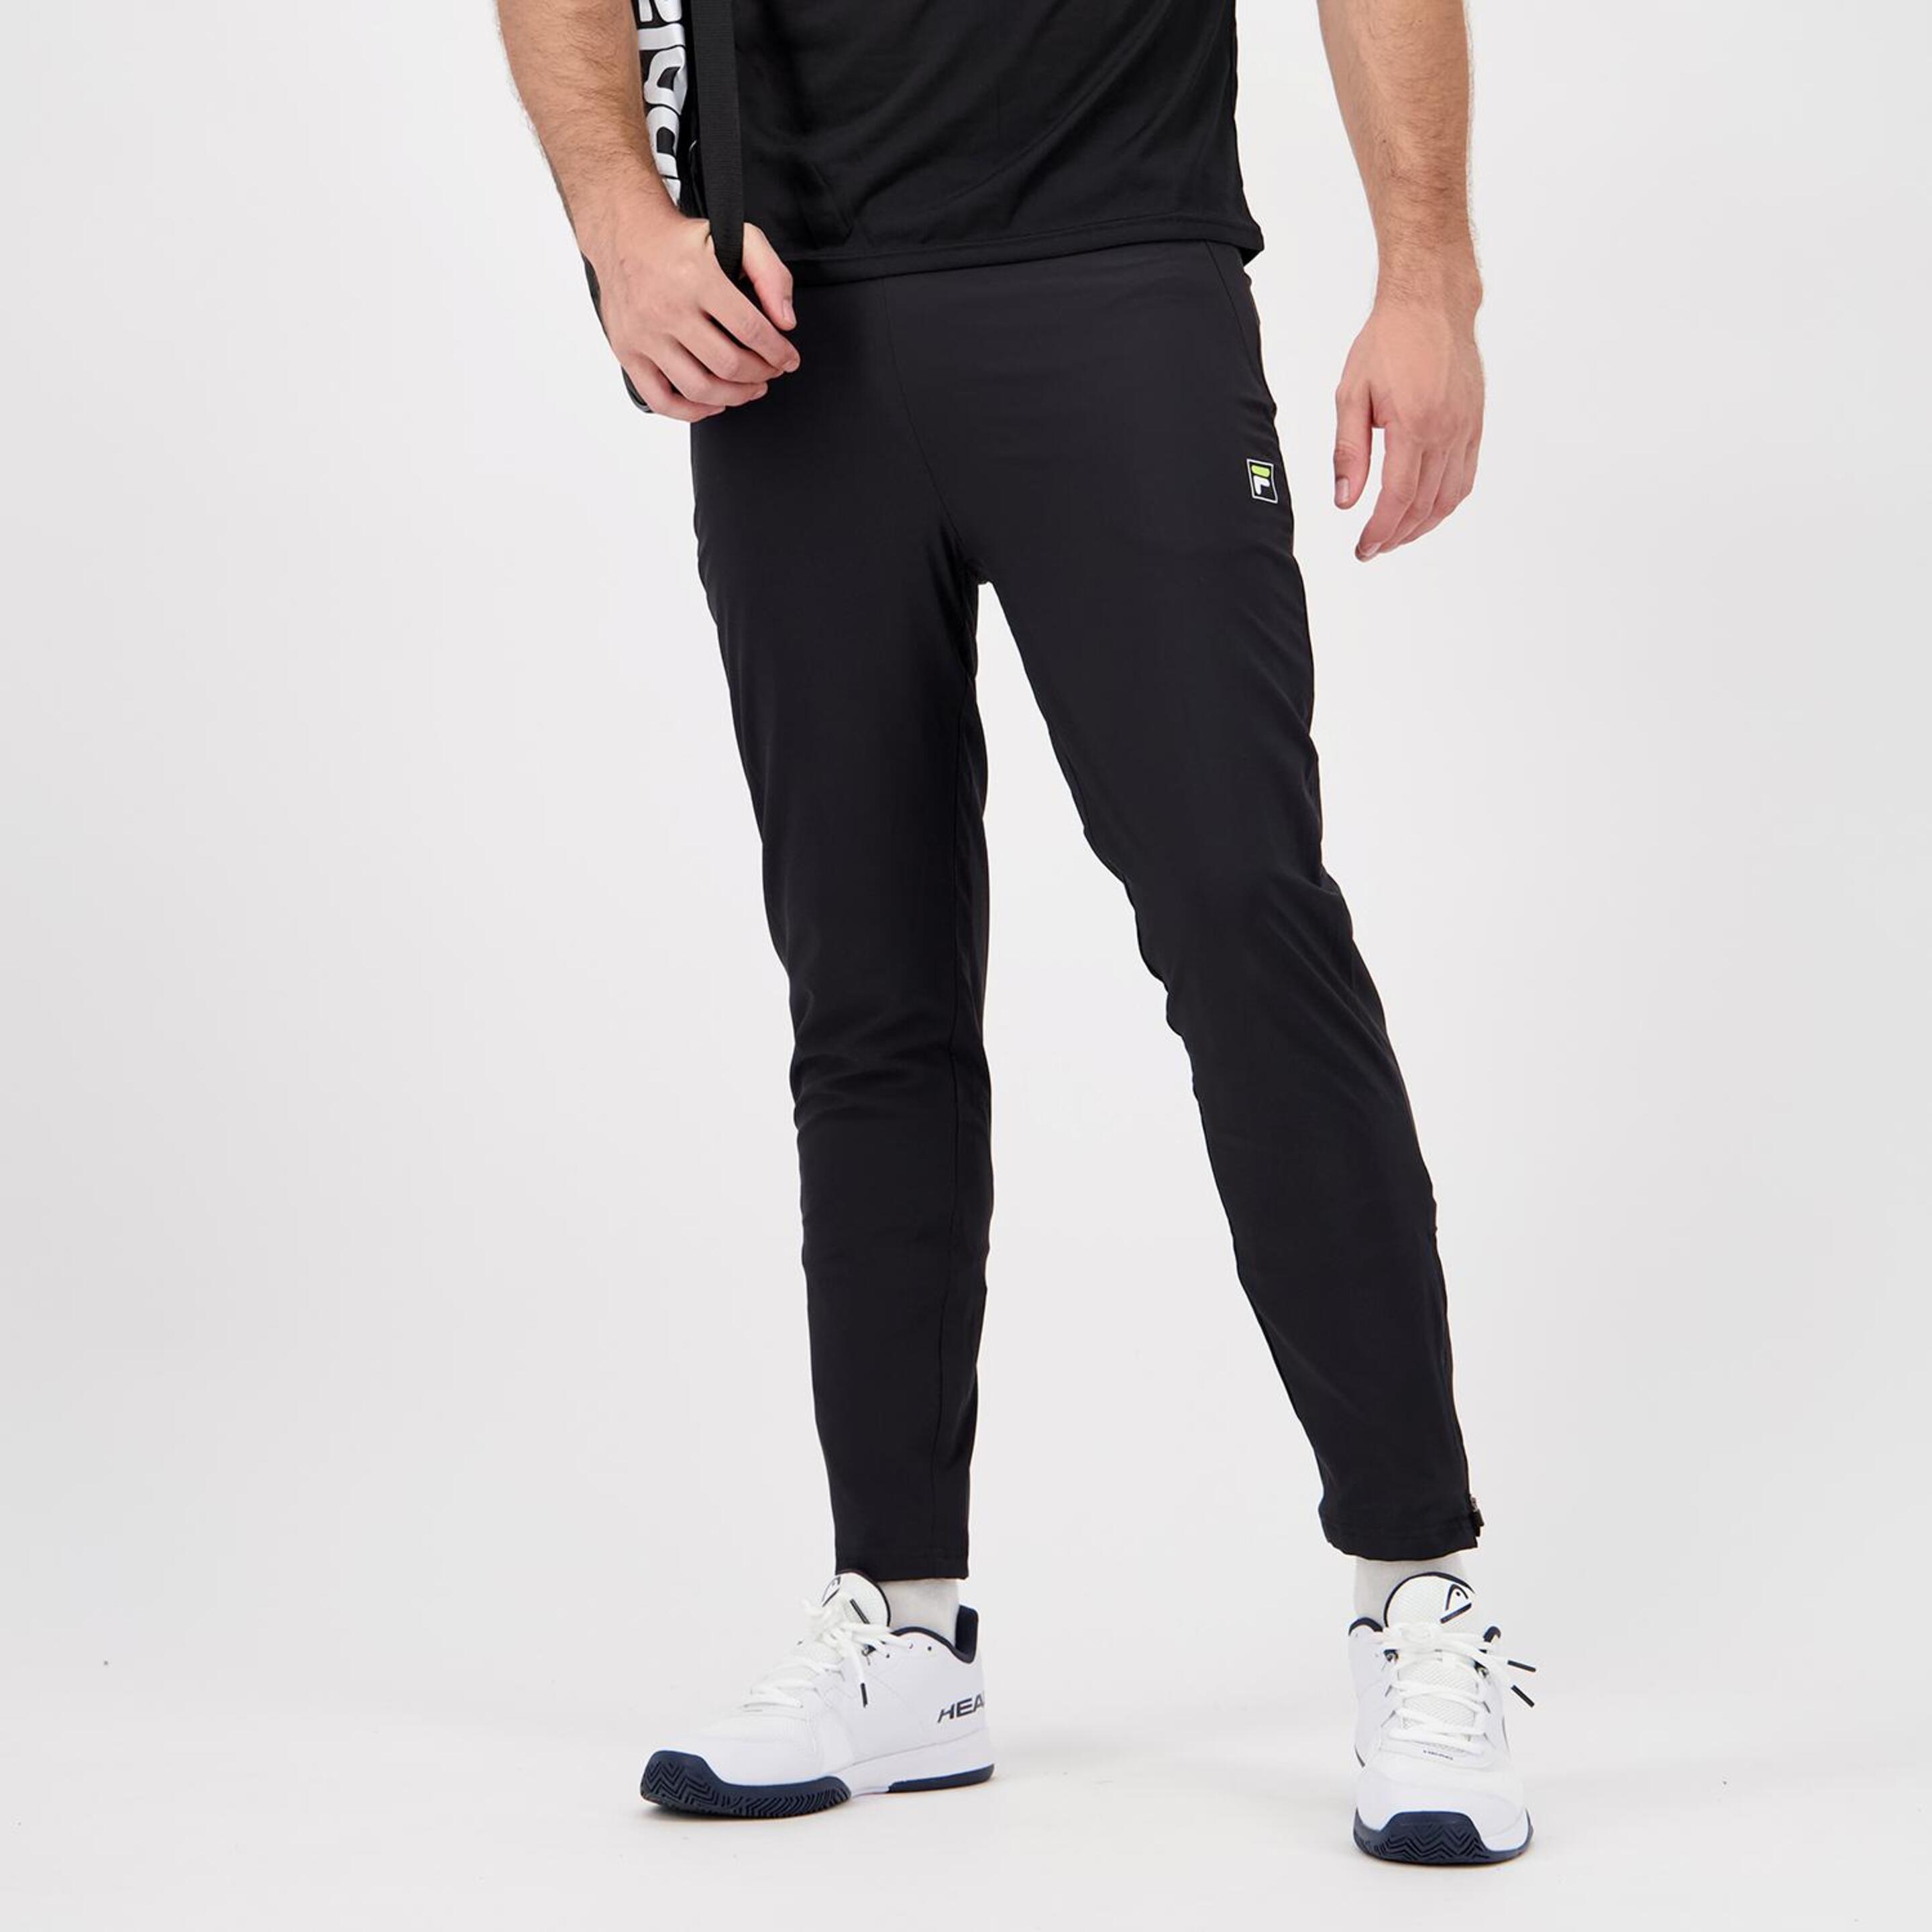 Pantalón Fila - negro - Pantalón Tenis Hombre